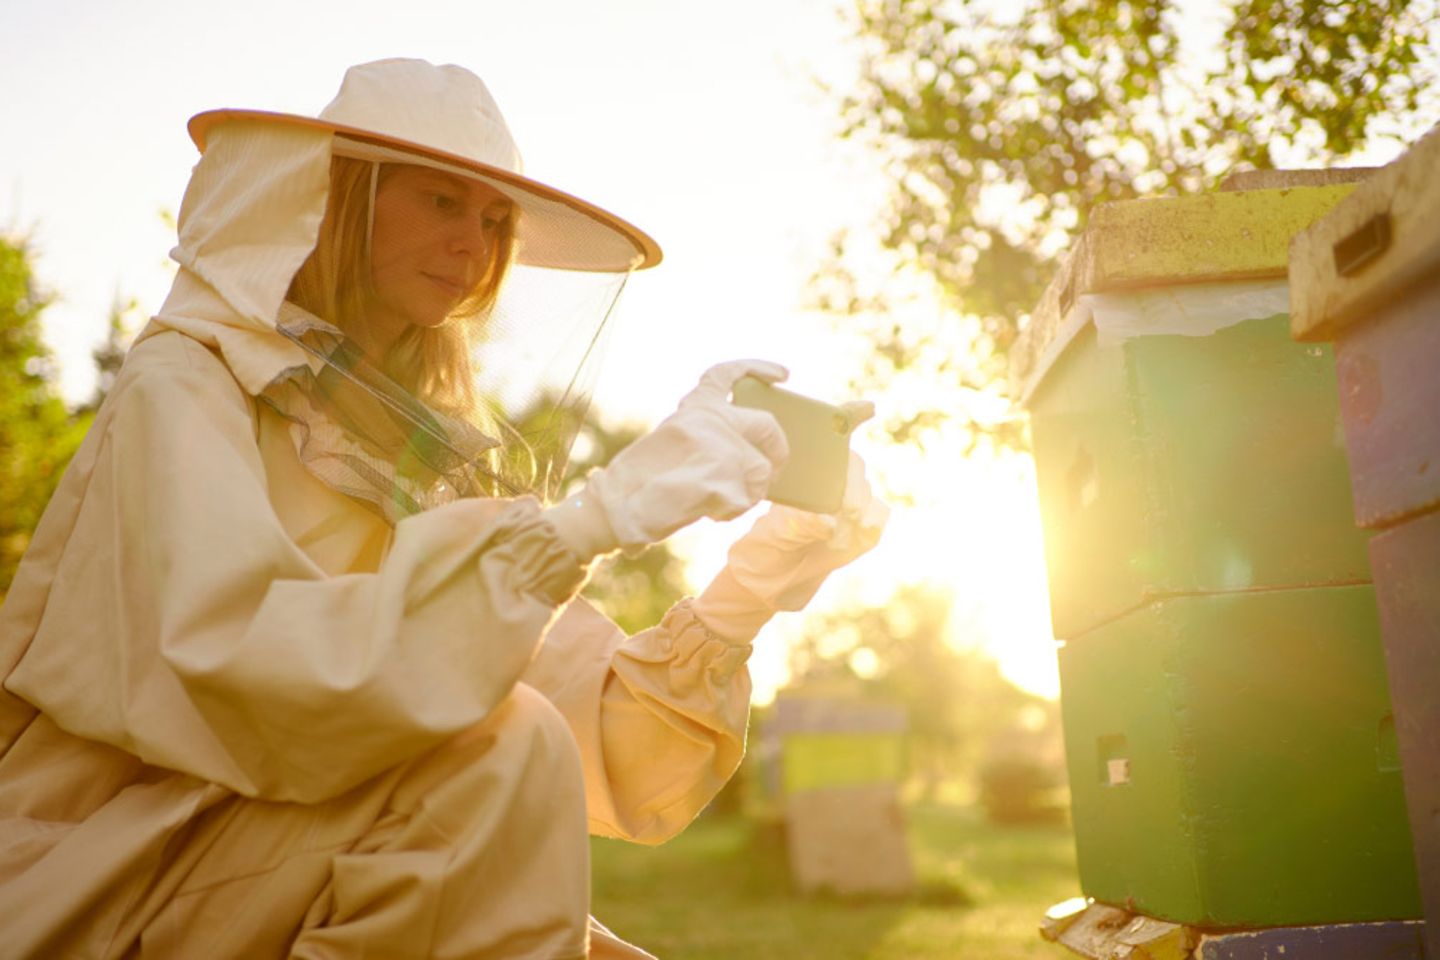 Uma mulher com uma roupa de proteção filma uma colmeia